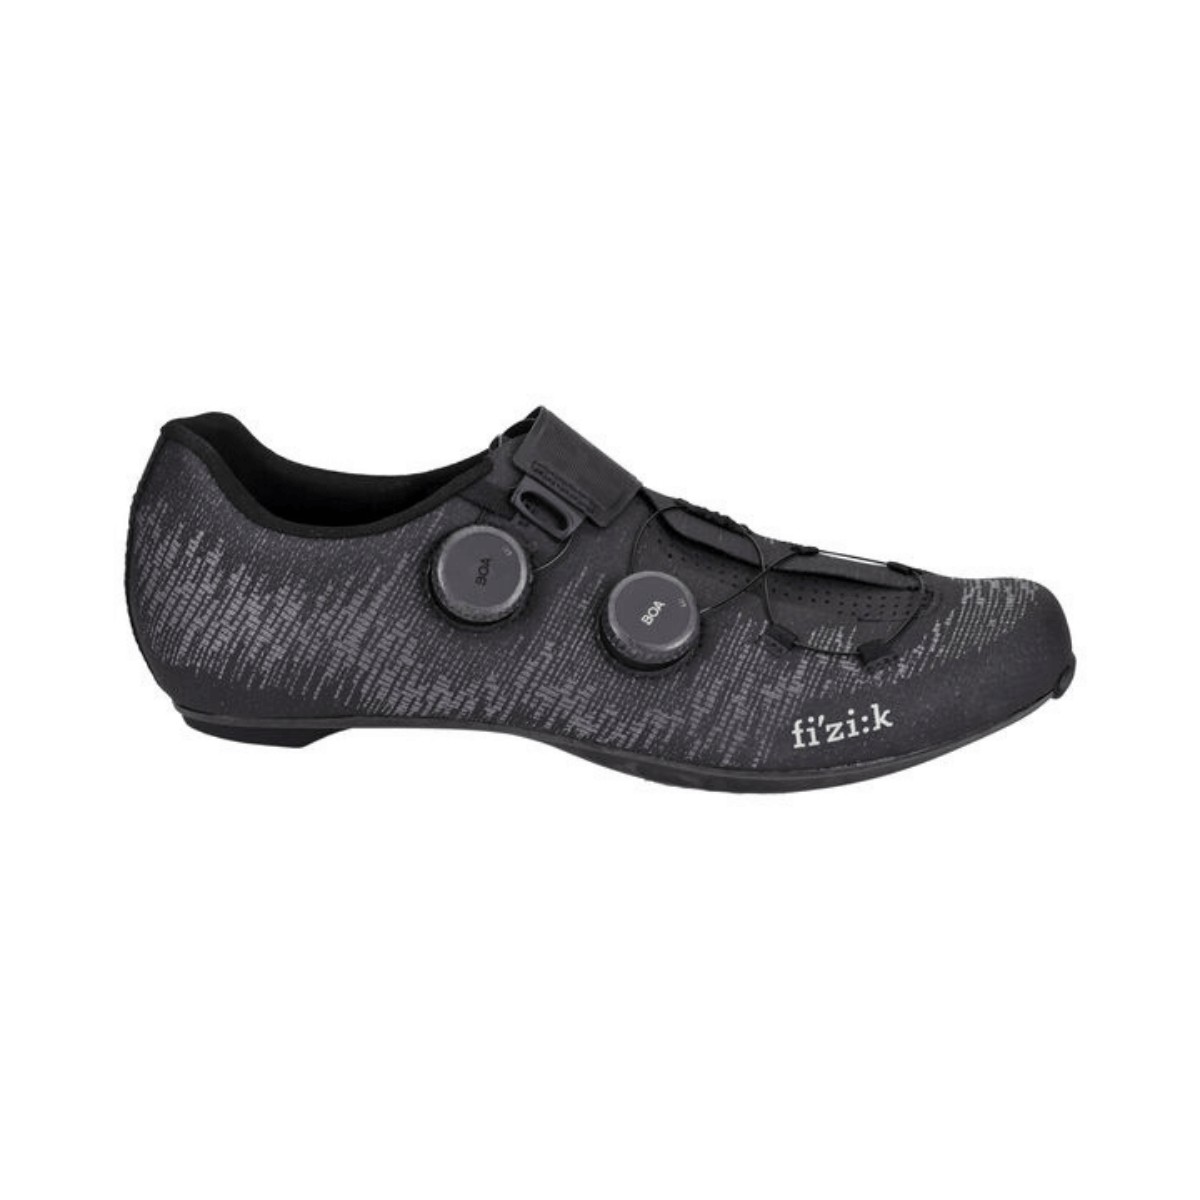 Chaussures Fizik Vento Infinito Knit Carbon 2 Noir